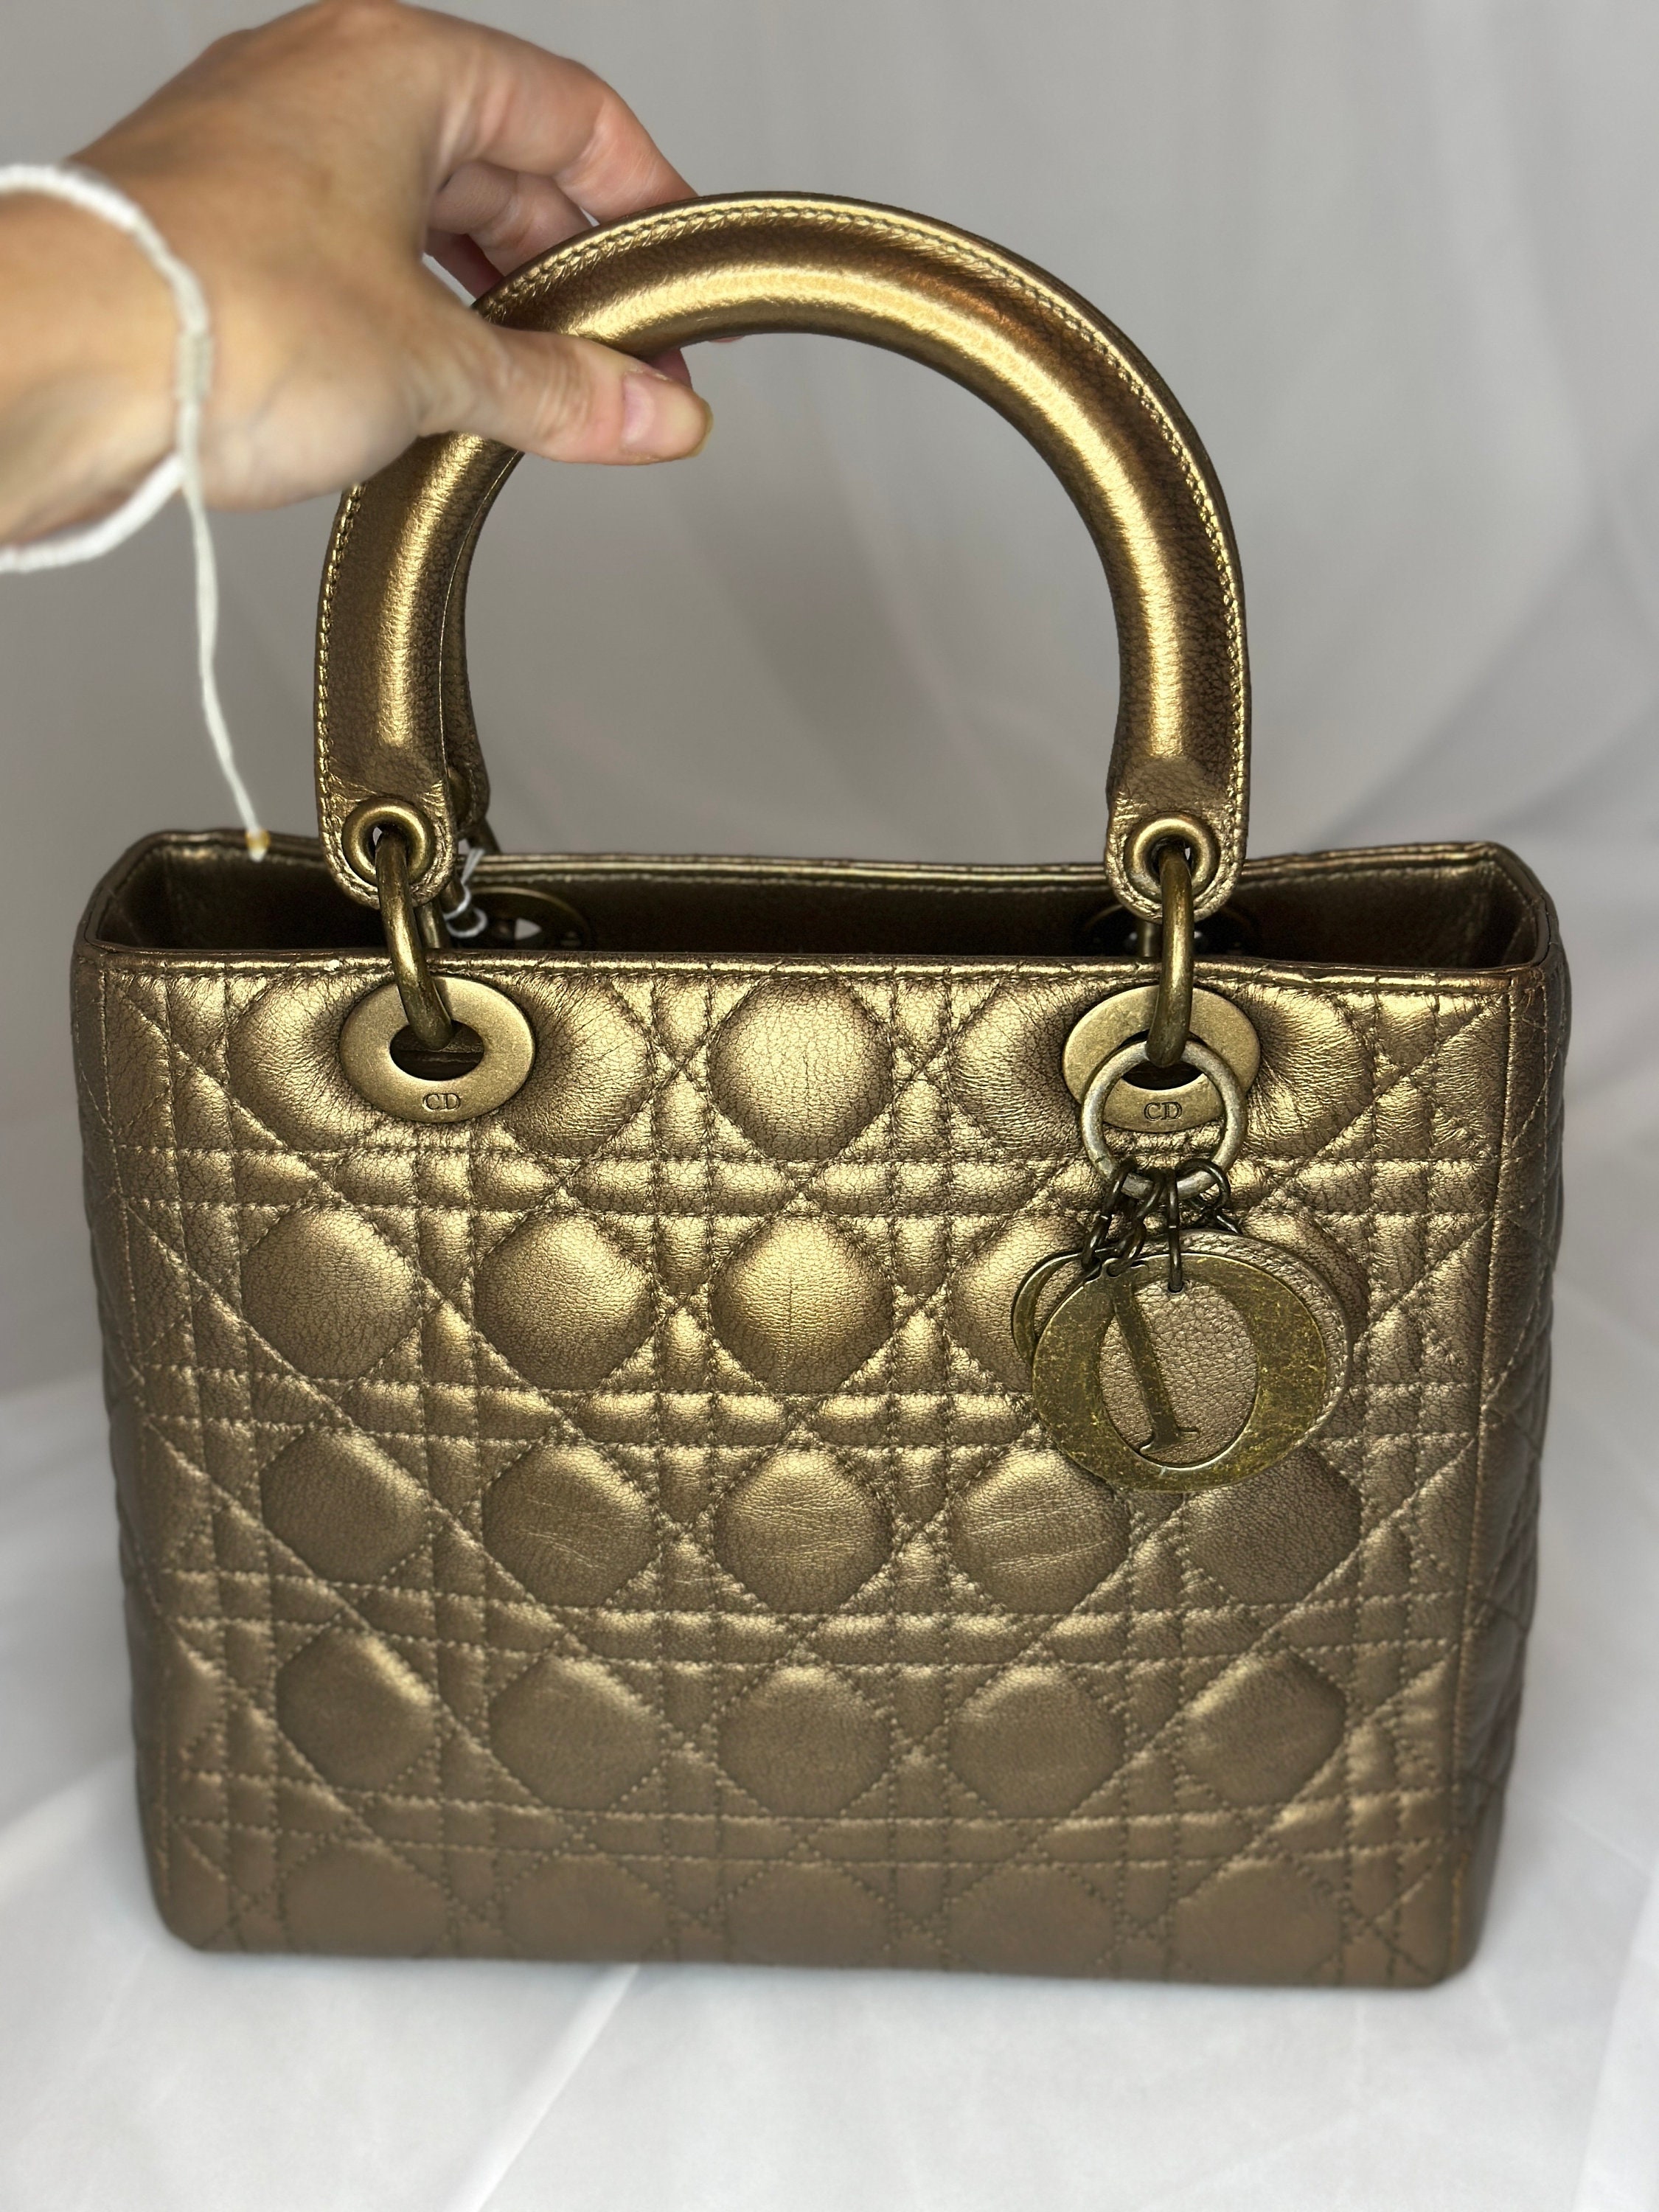 Lady Dior Bag 